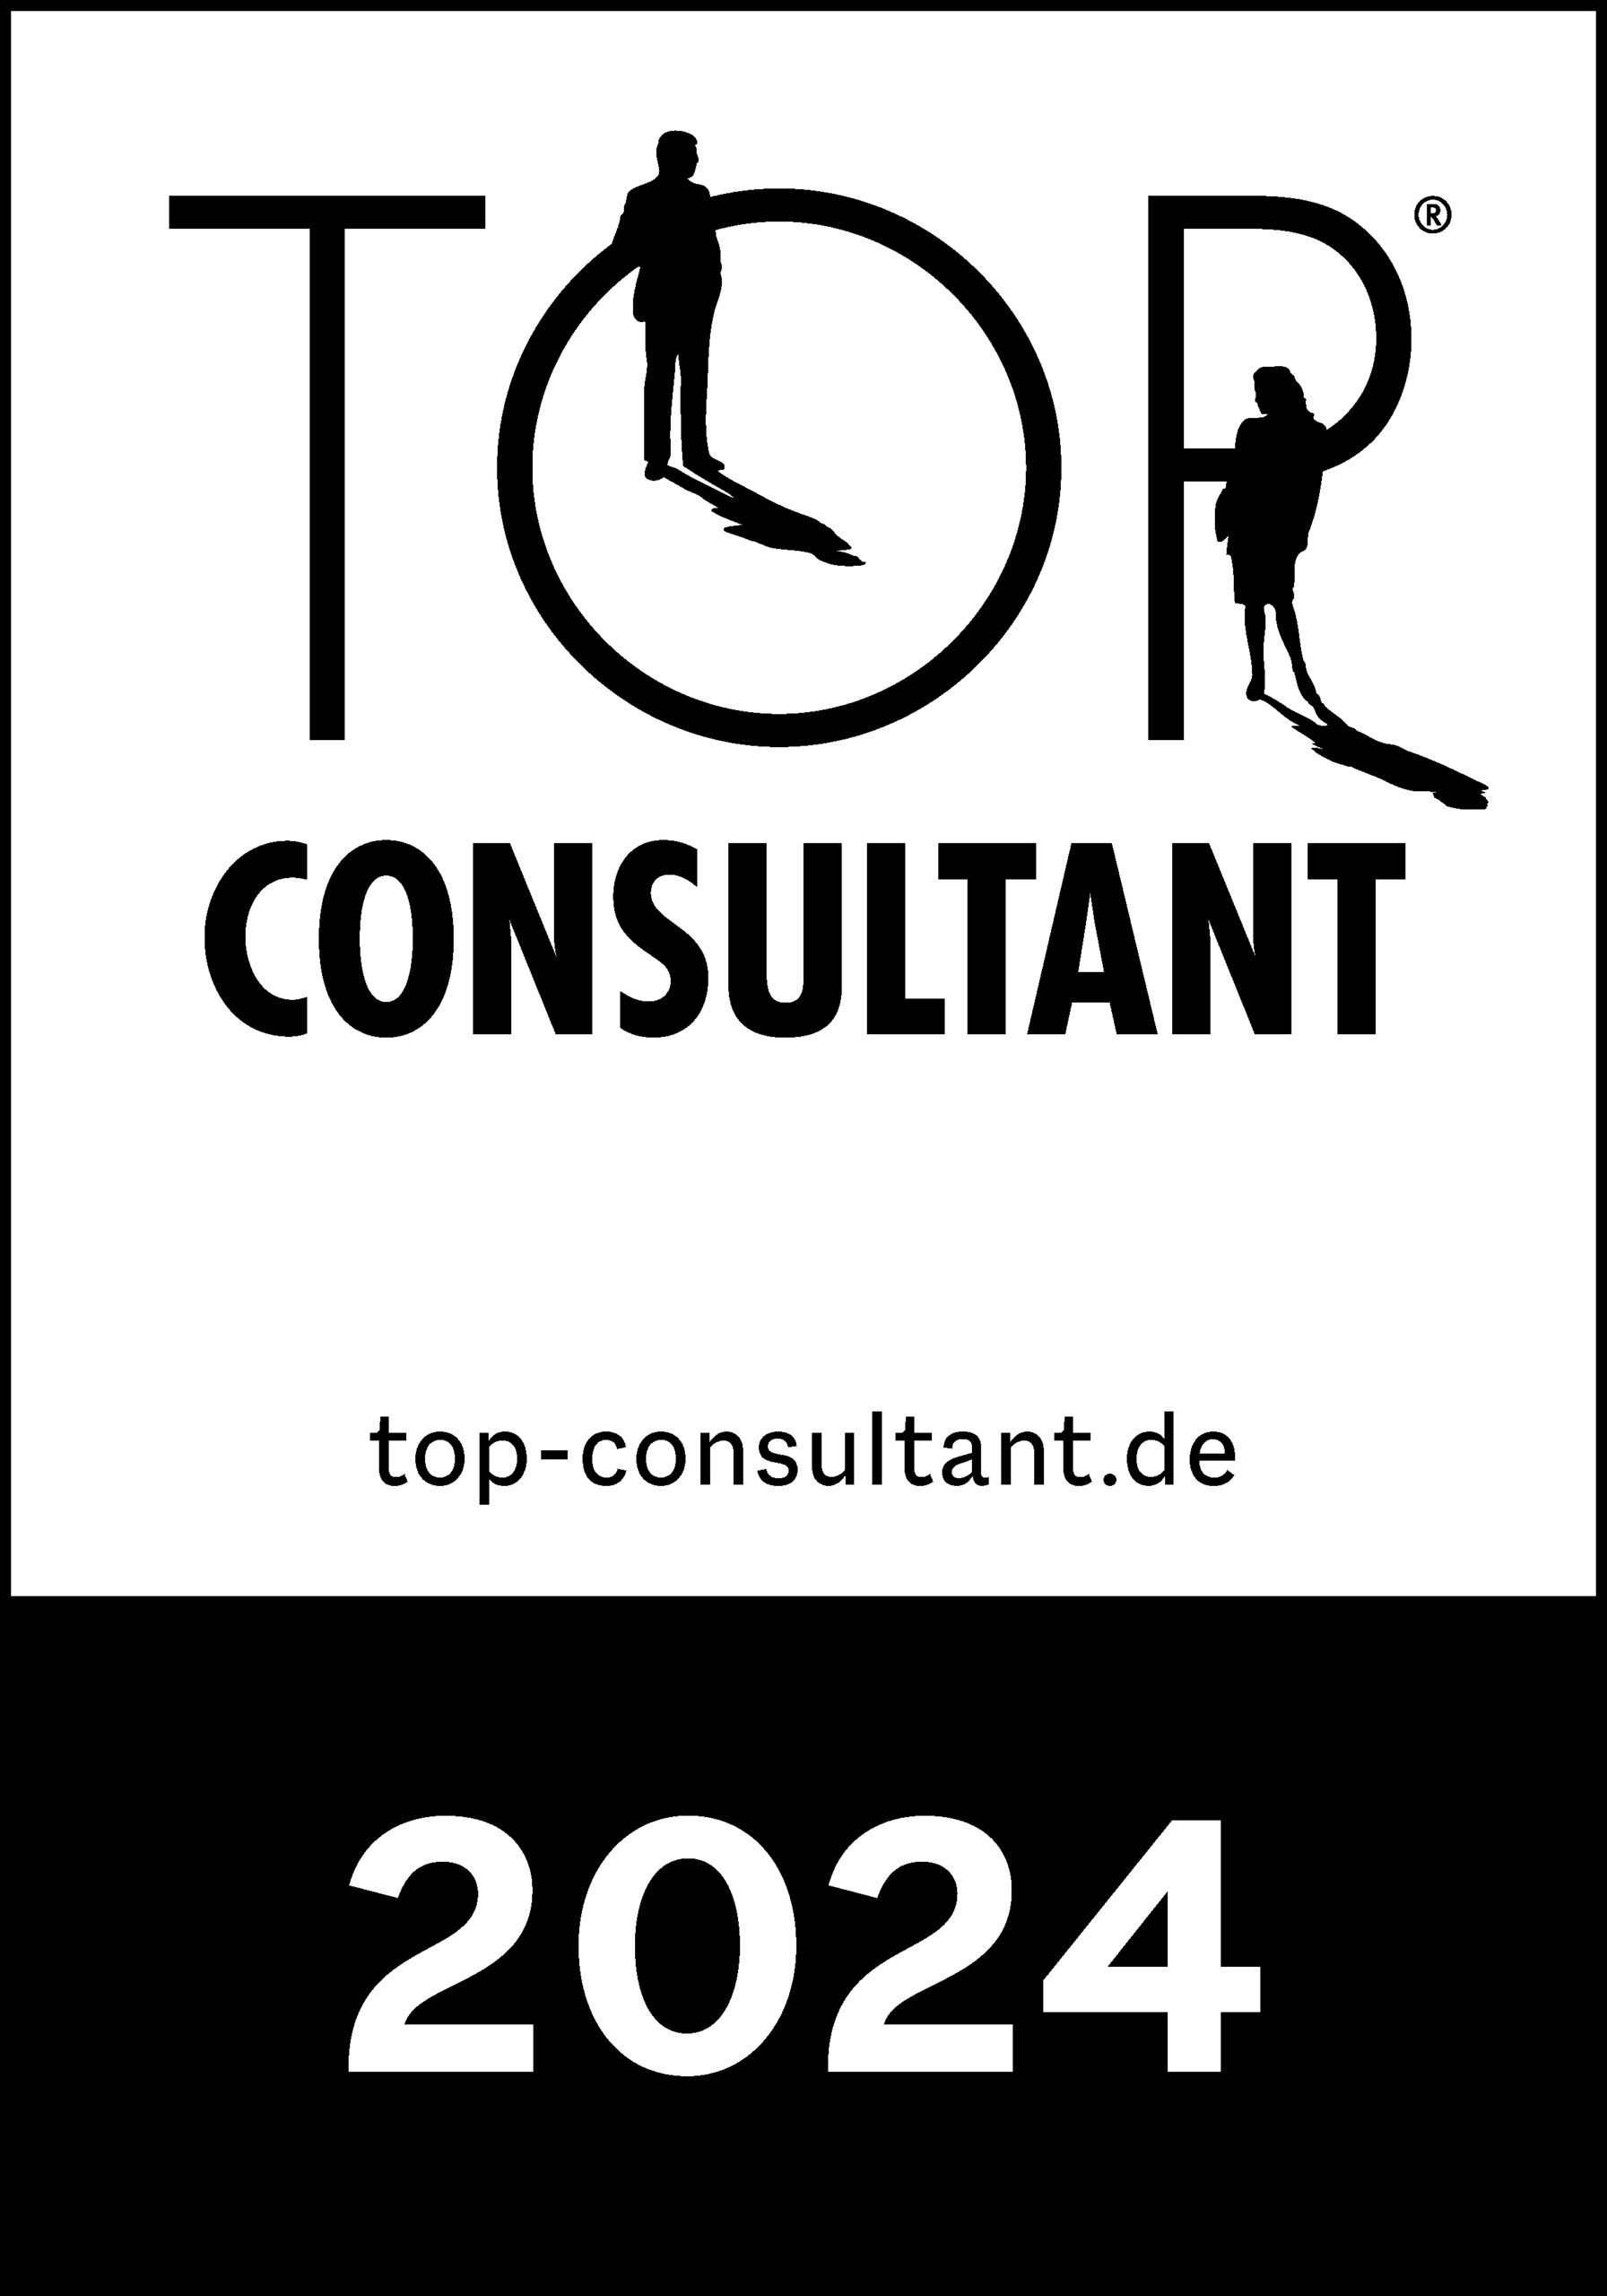 Top Consultant 2022